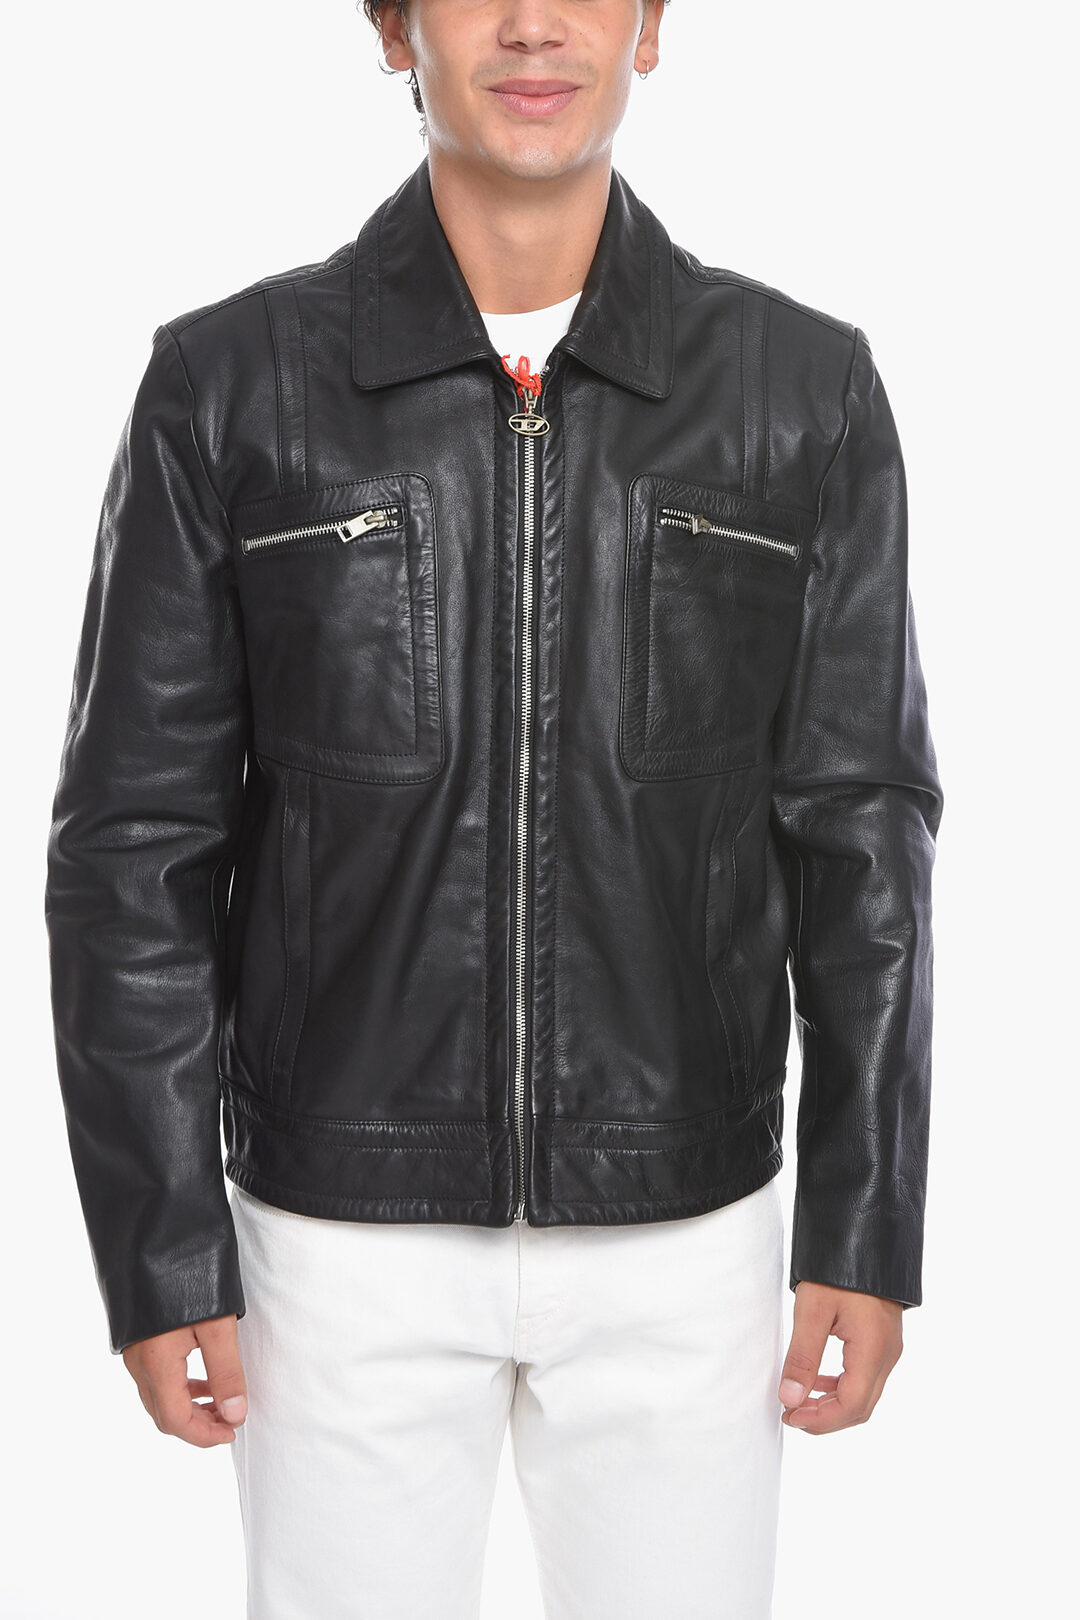 アウター形シングルdiesel cow leather jacket - ジャケット・アウター